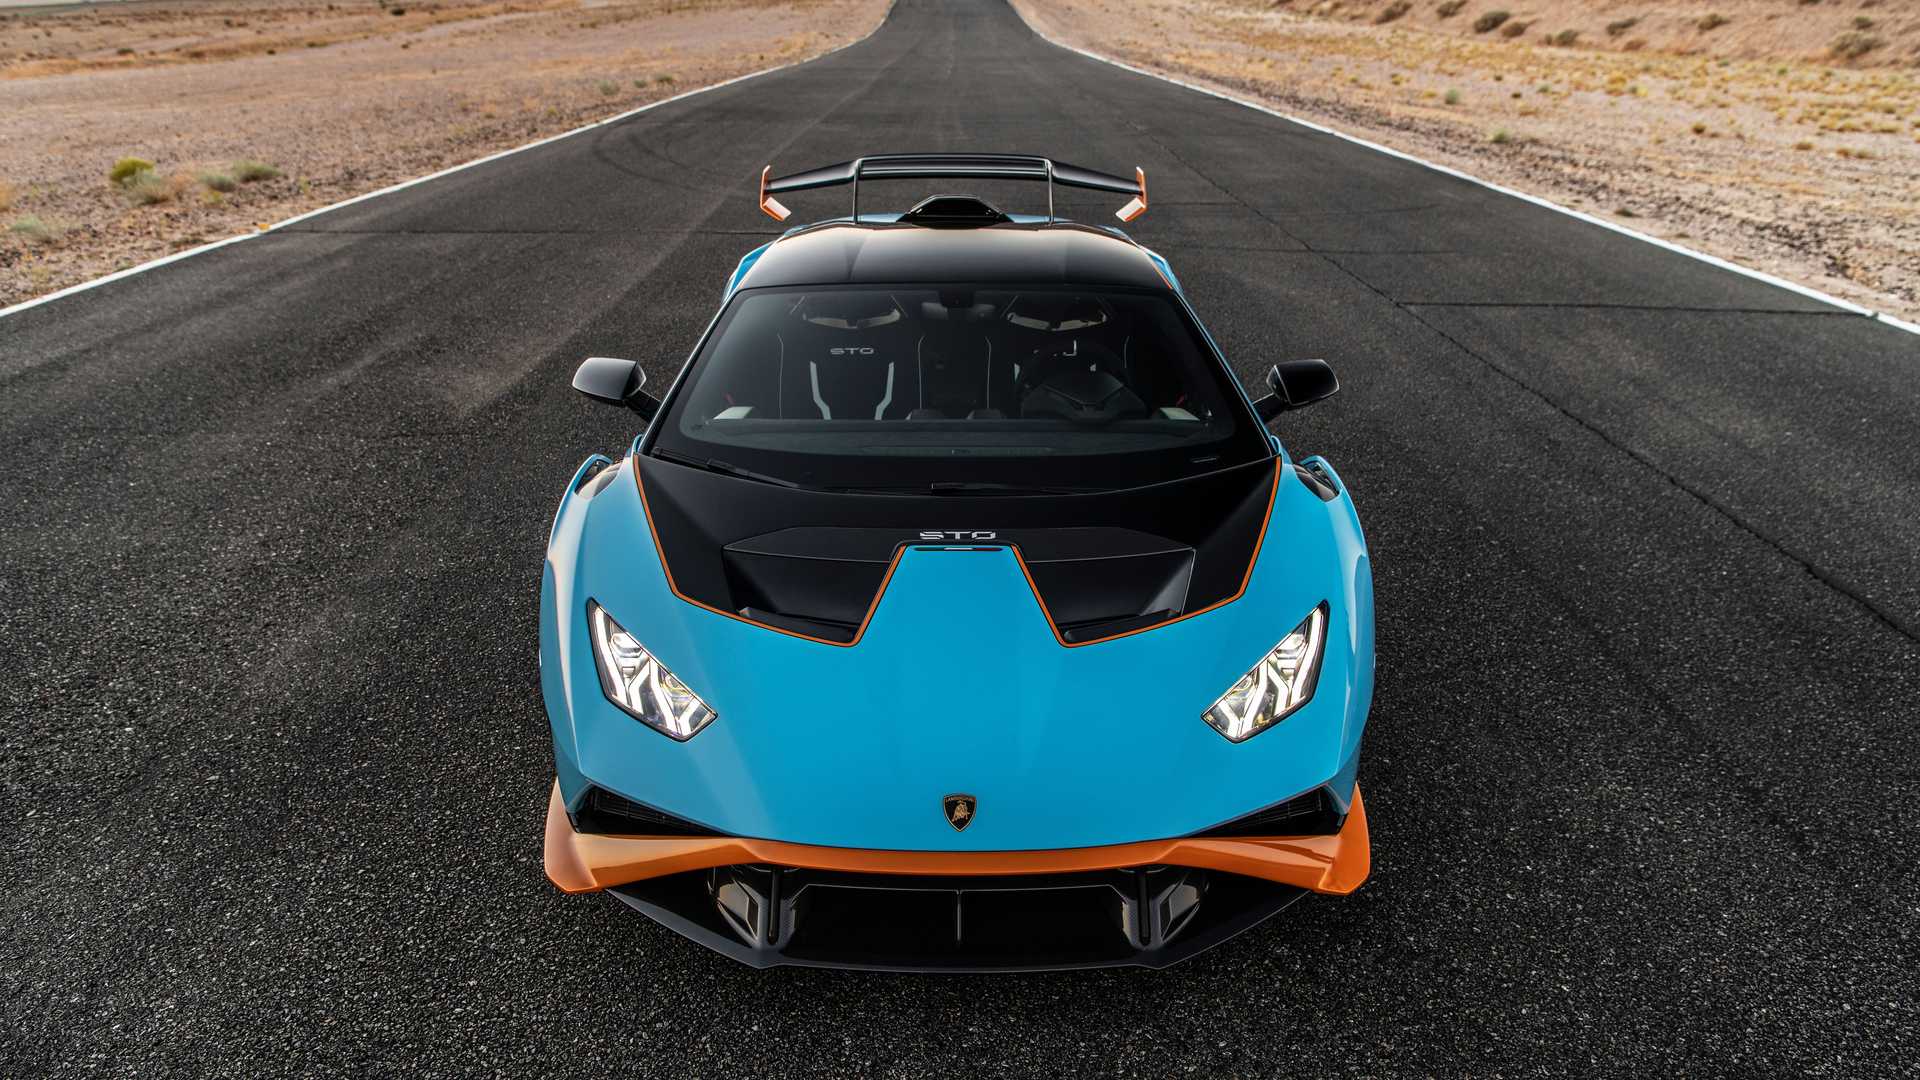 Lamborghini triệu hồi hàng loạt mẫu Huracan vì lỗi cửa không mở